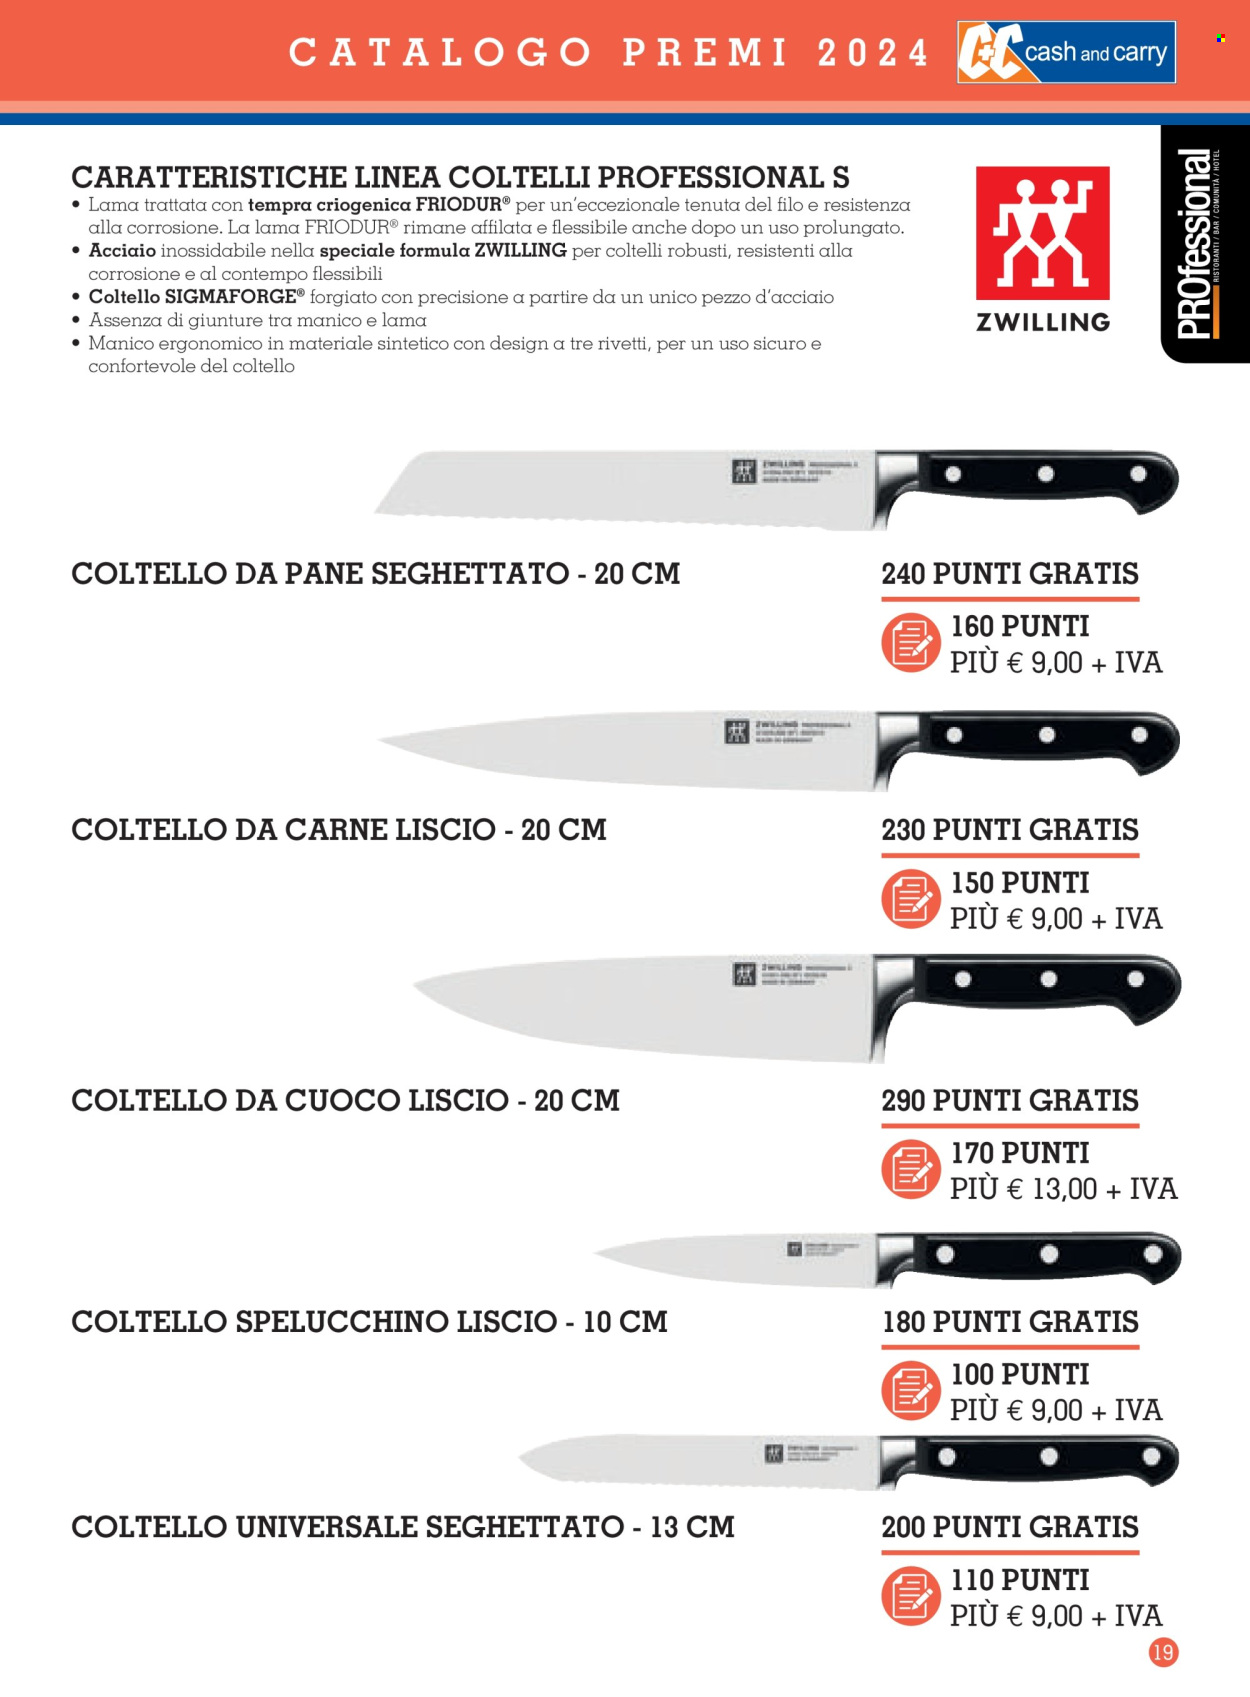 thumbnail - Volantino C+C Cash & Carry - 11/3/2024 - 2/2/2025 - Prodotti in offerta - coltello, coltello spelucchino. Pagina 19.